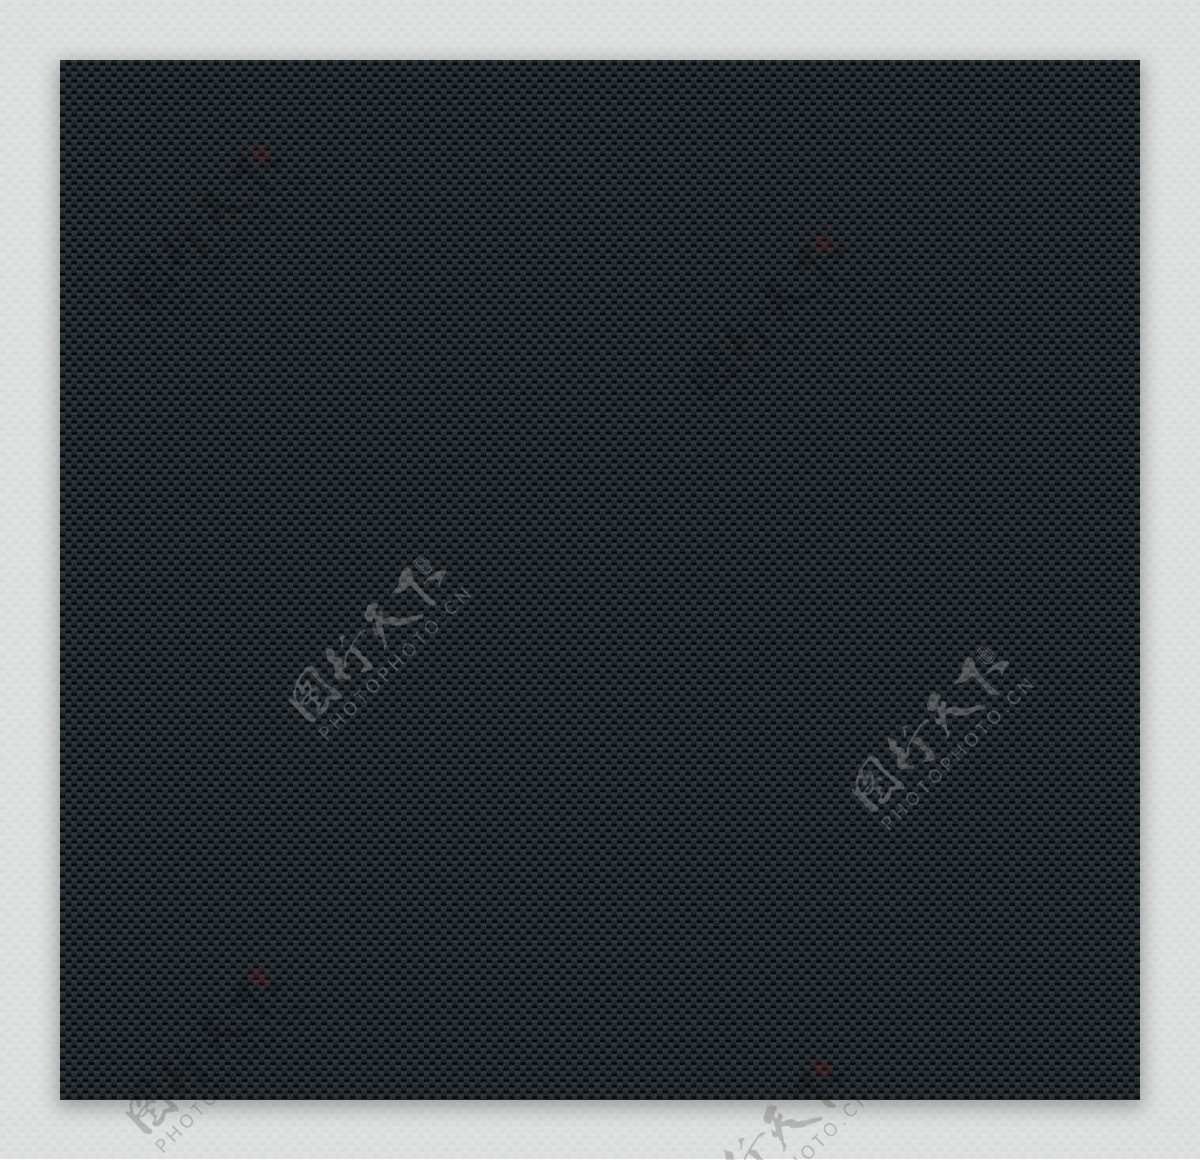 黑色钢板背景图片